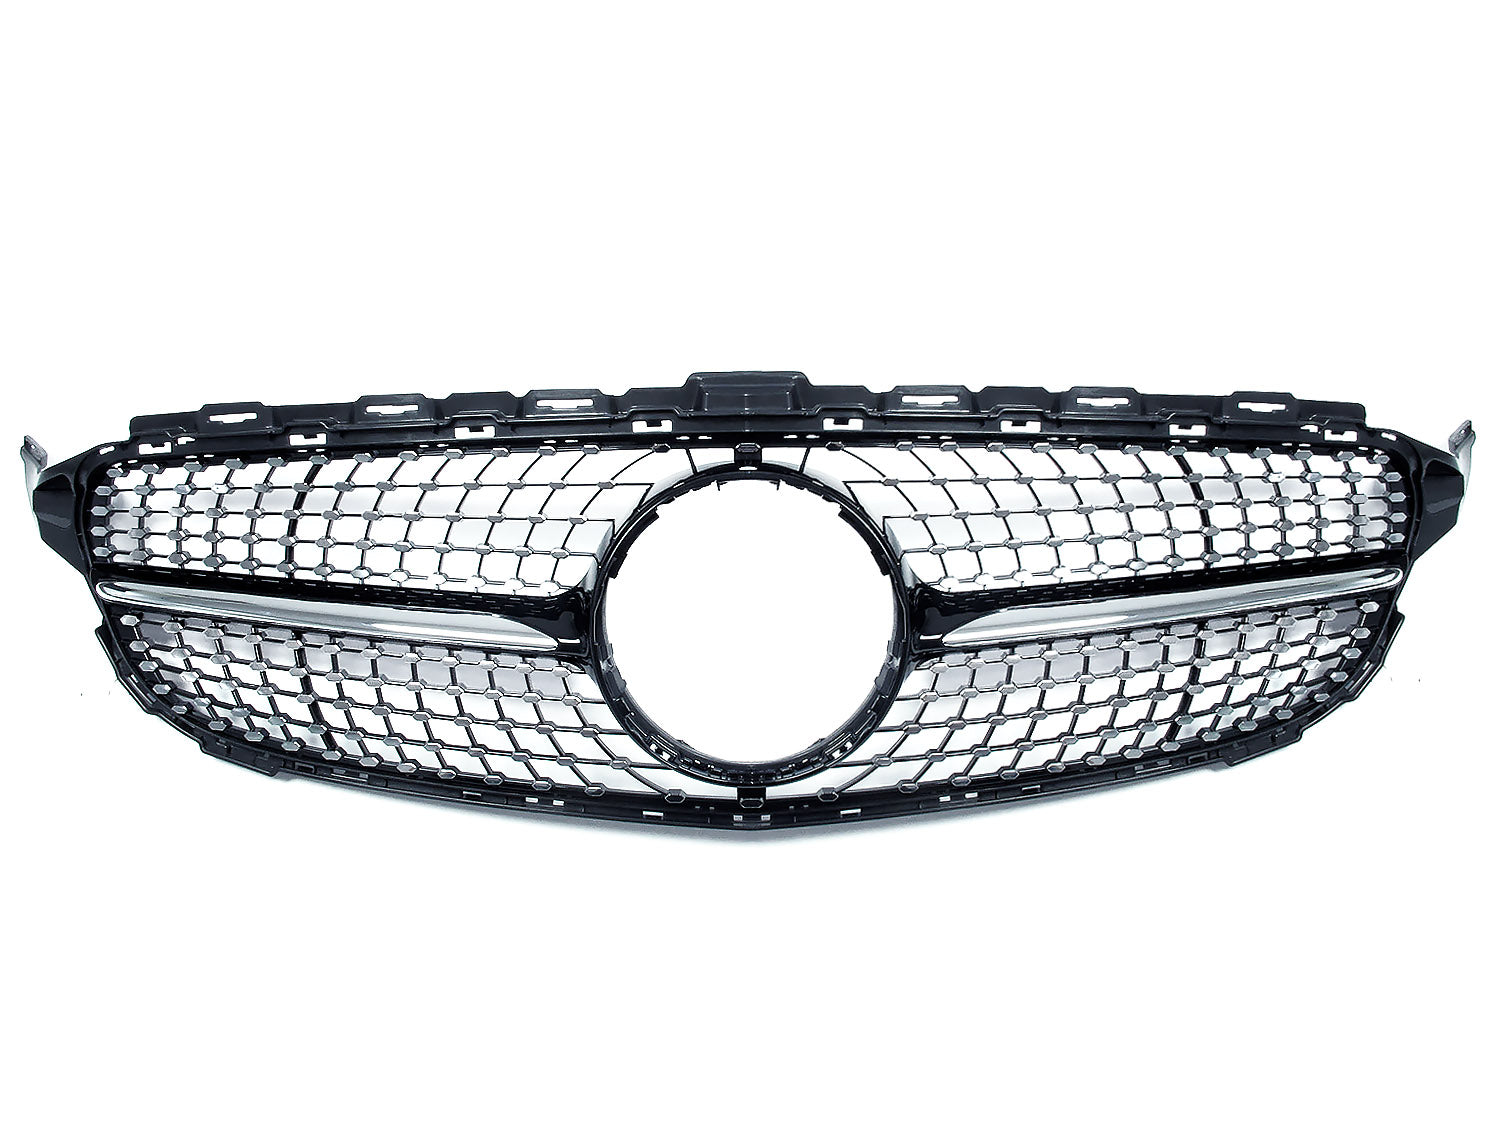 Schwarz Diamantgrill Kühlergrill Grill für Mercedes Benz C-Klasse W205 C205 A205 S205 C43 AMG 2014-03/2018 pz128